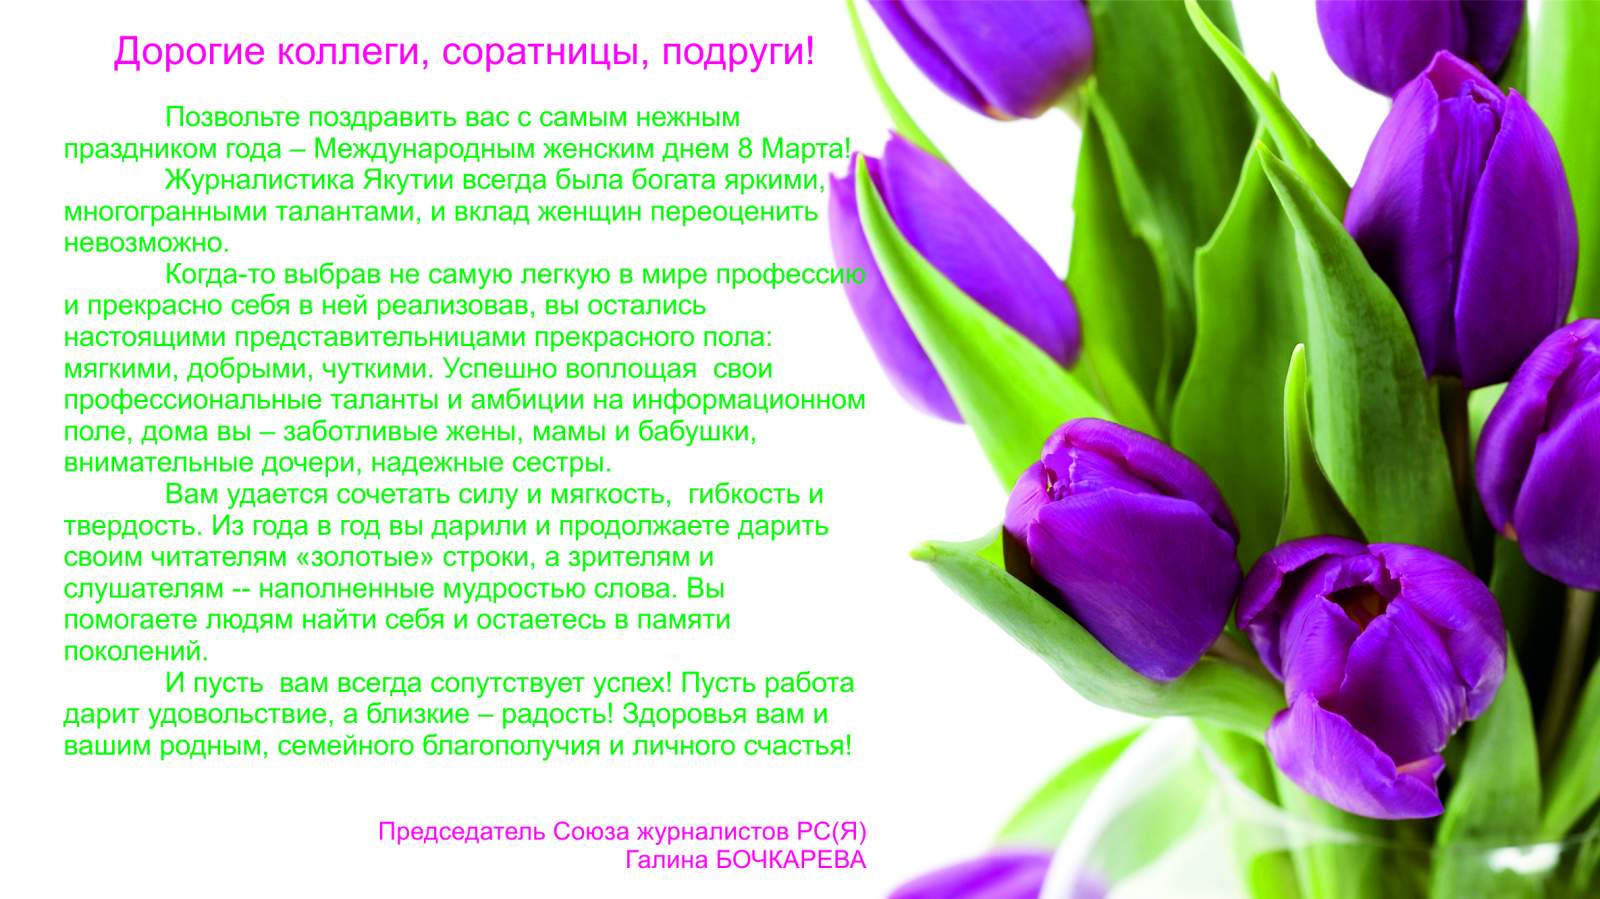 Поздравляем с Международным женским днем - 8 марта!